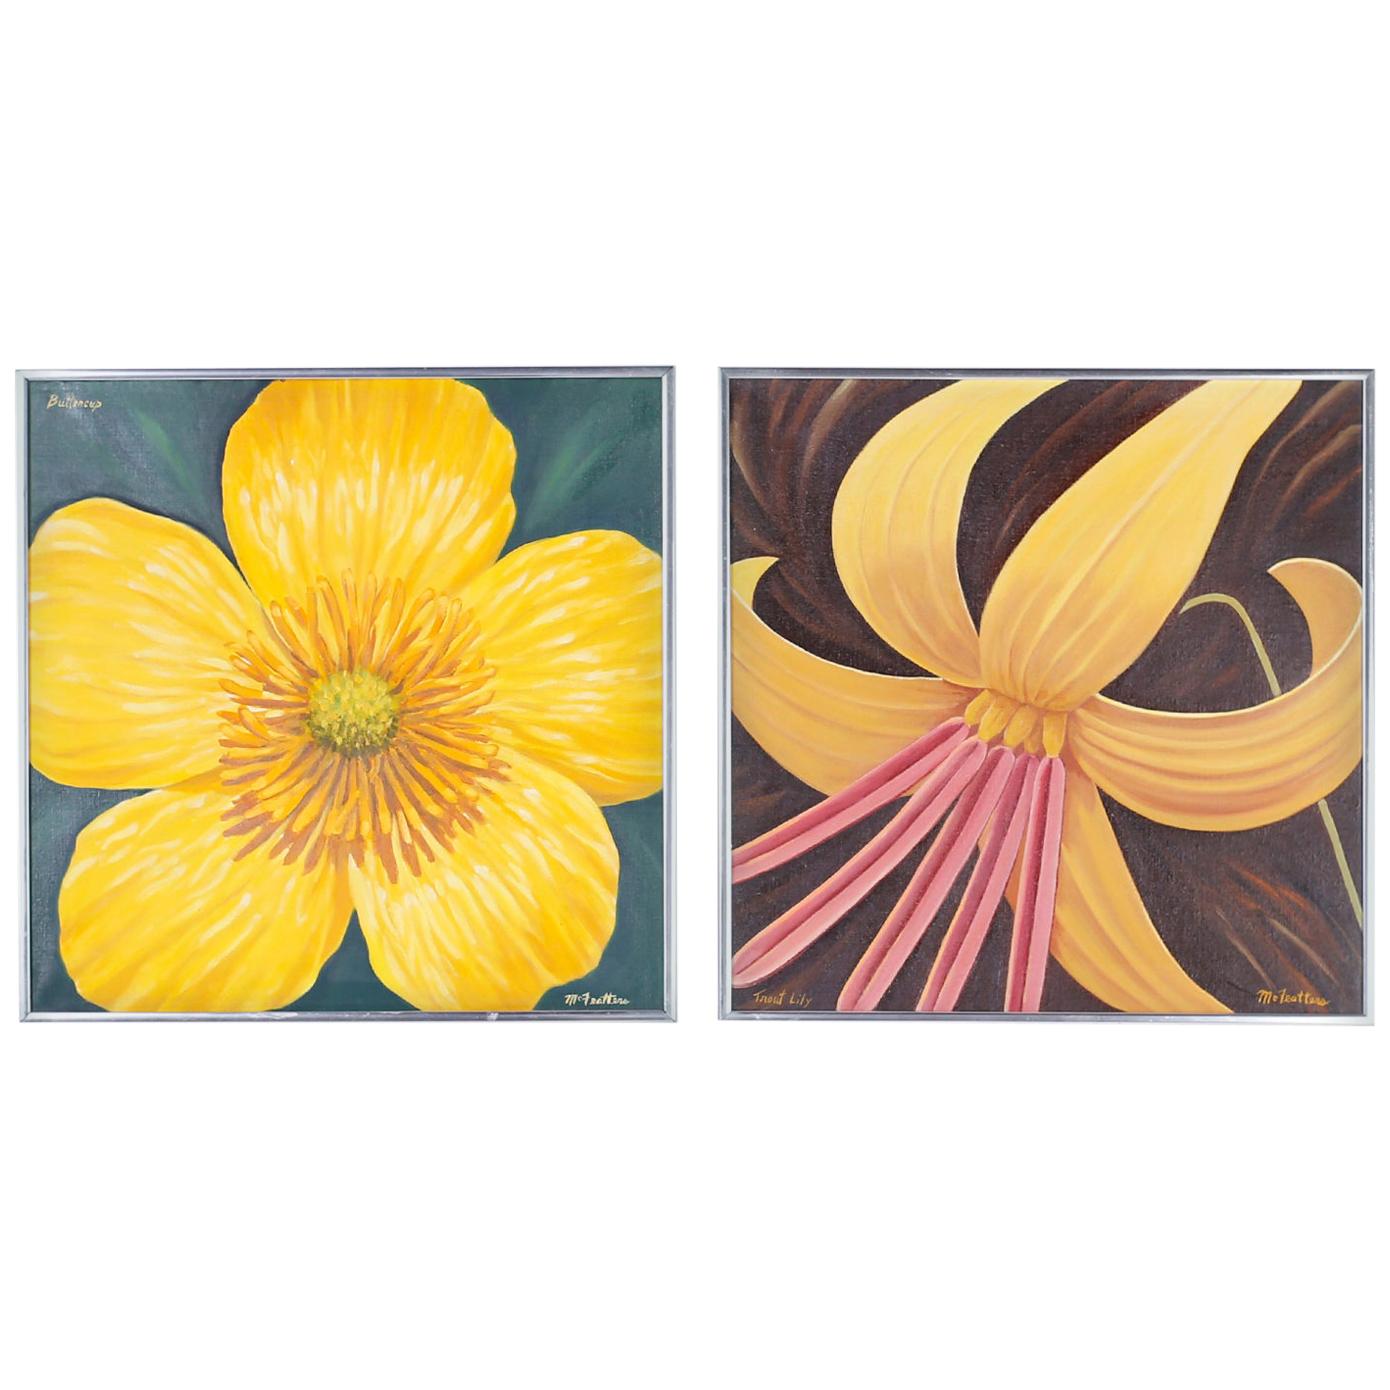 Gemälde von Blumen aus Acryl auf Leinwand von Dale McFeatters